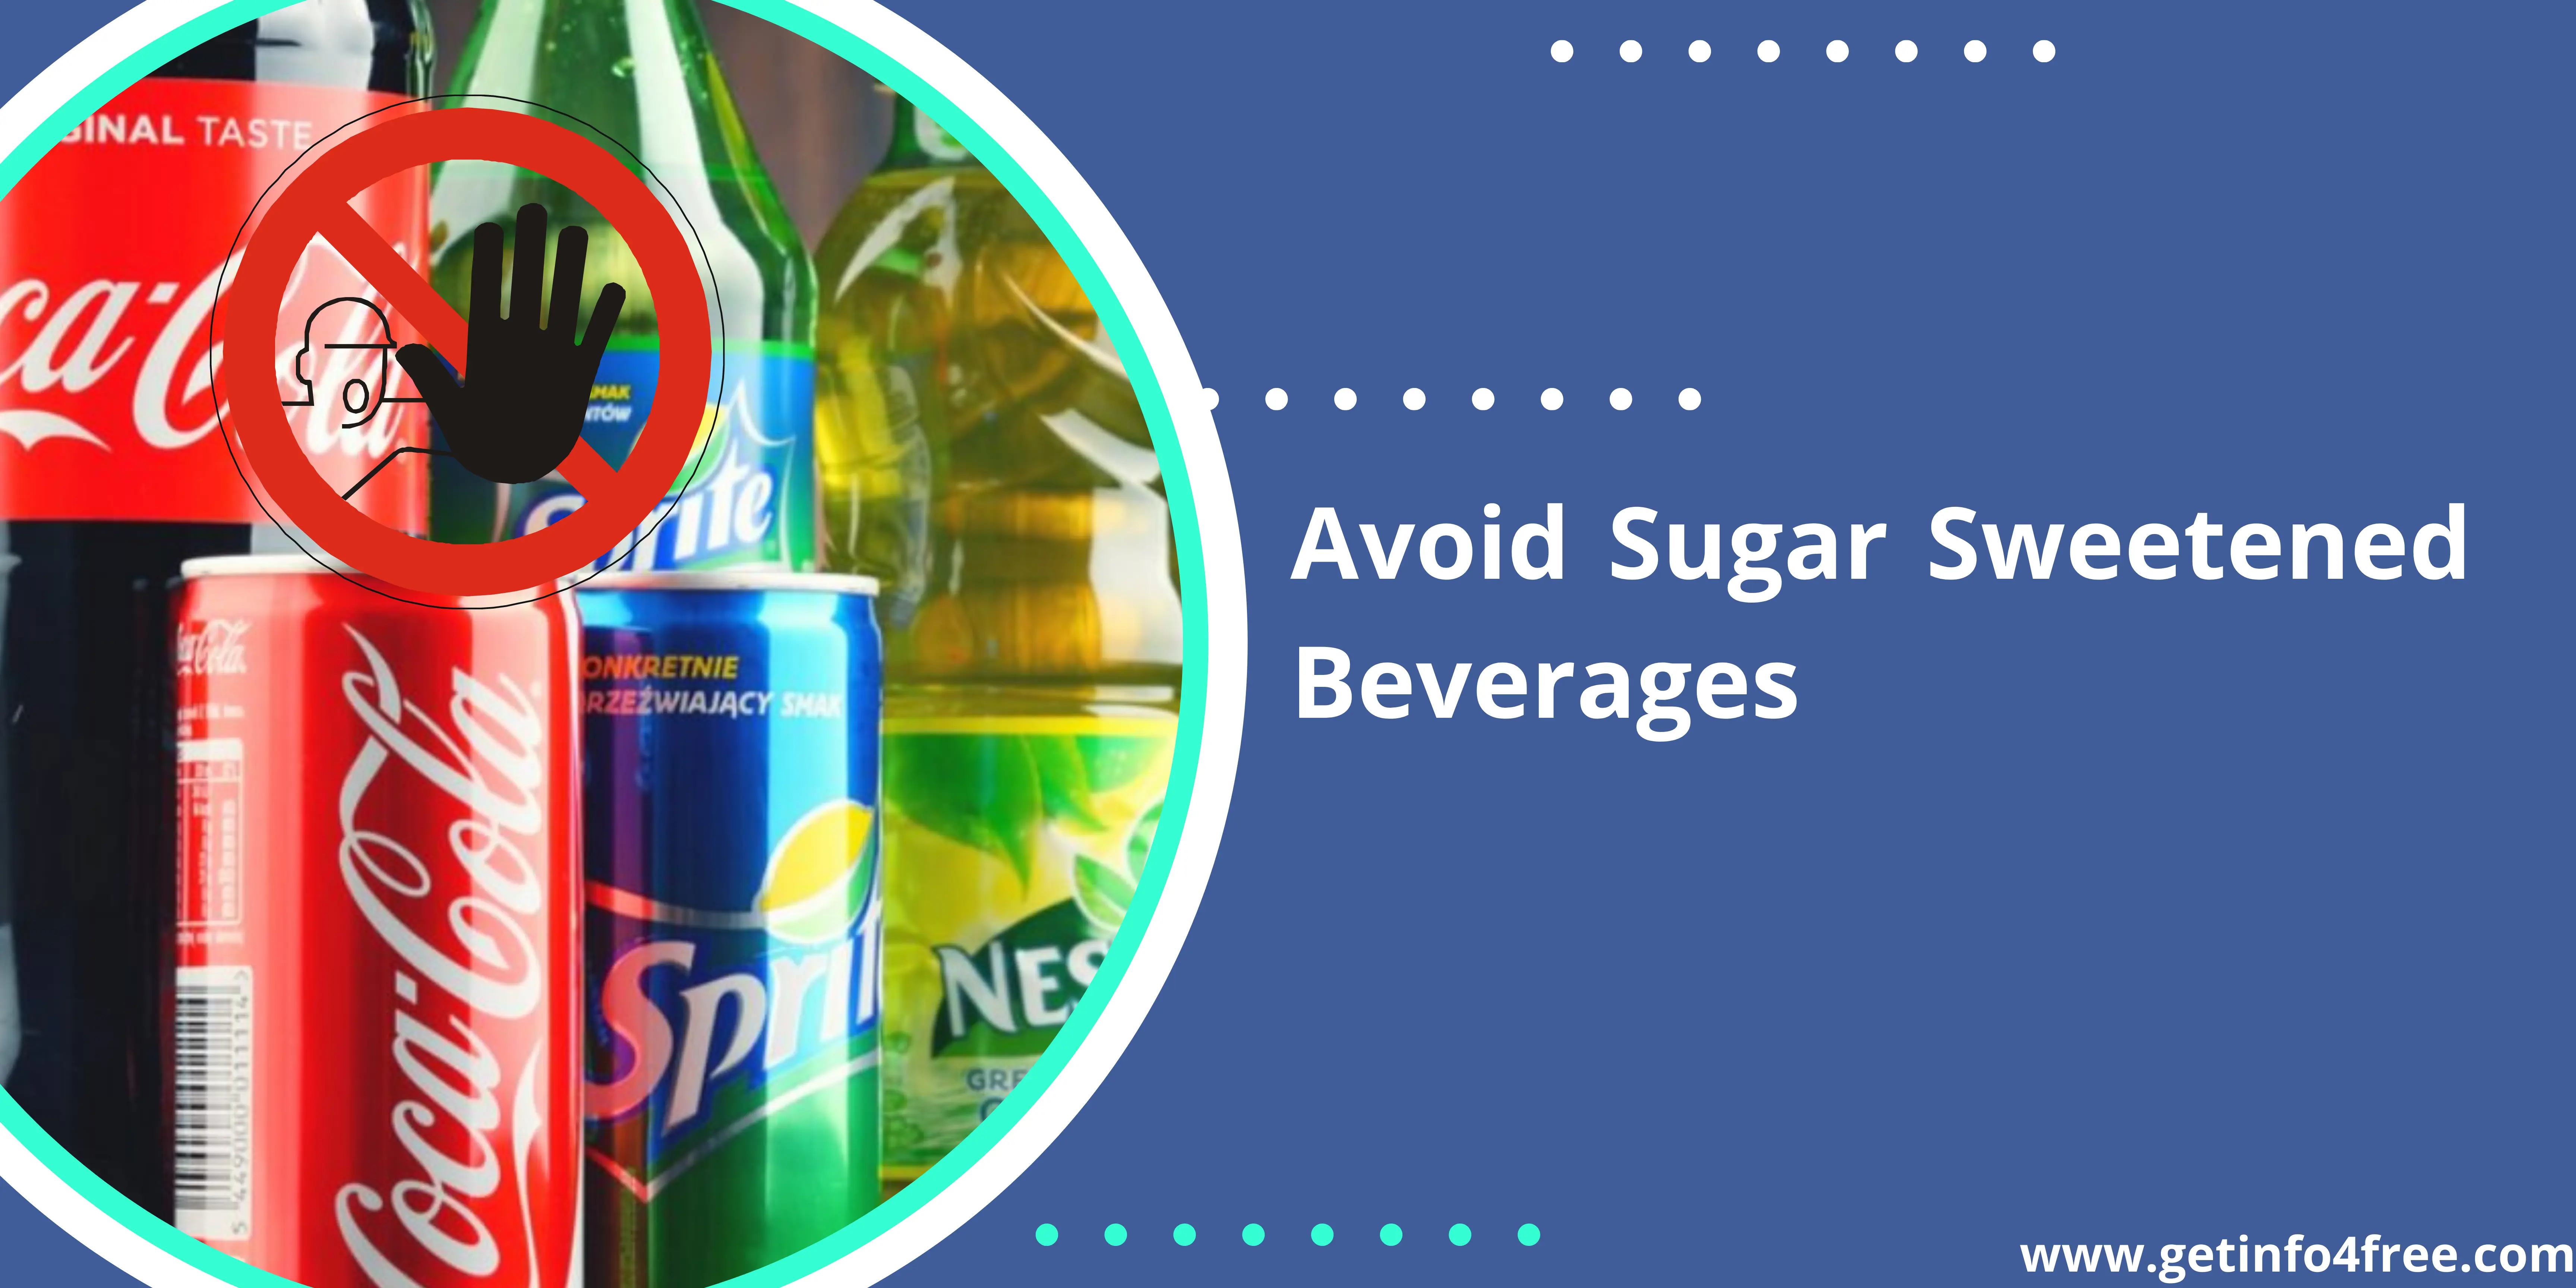 Steer Clear of Sugar-Sweetened Beverages